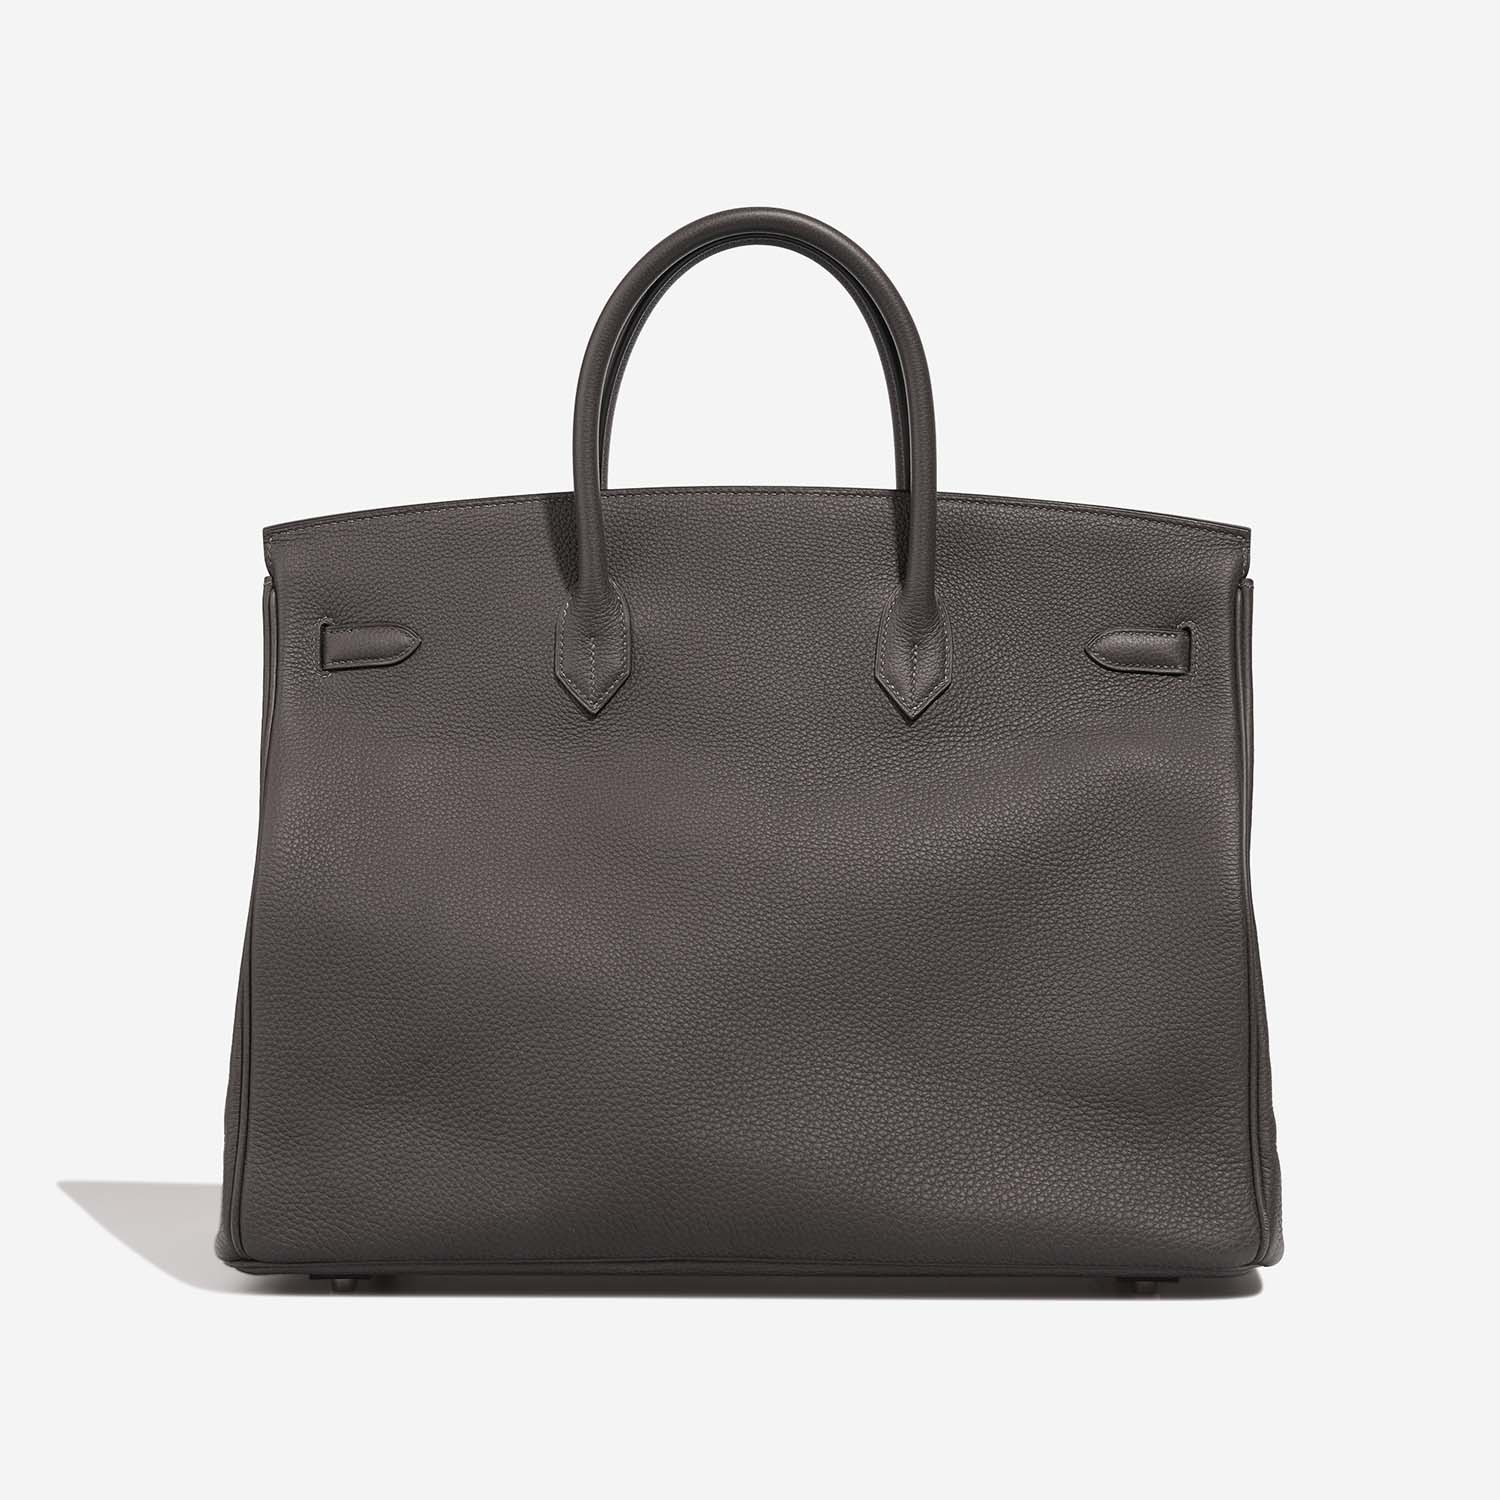 Hermès Birkin 40 GrisMeyer Back | Verkaufen Sie Ihre Designertasche auf Saclab.com